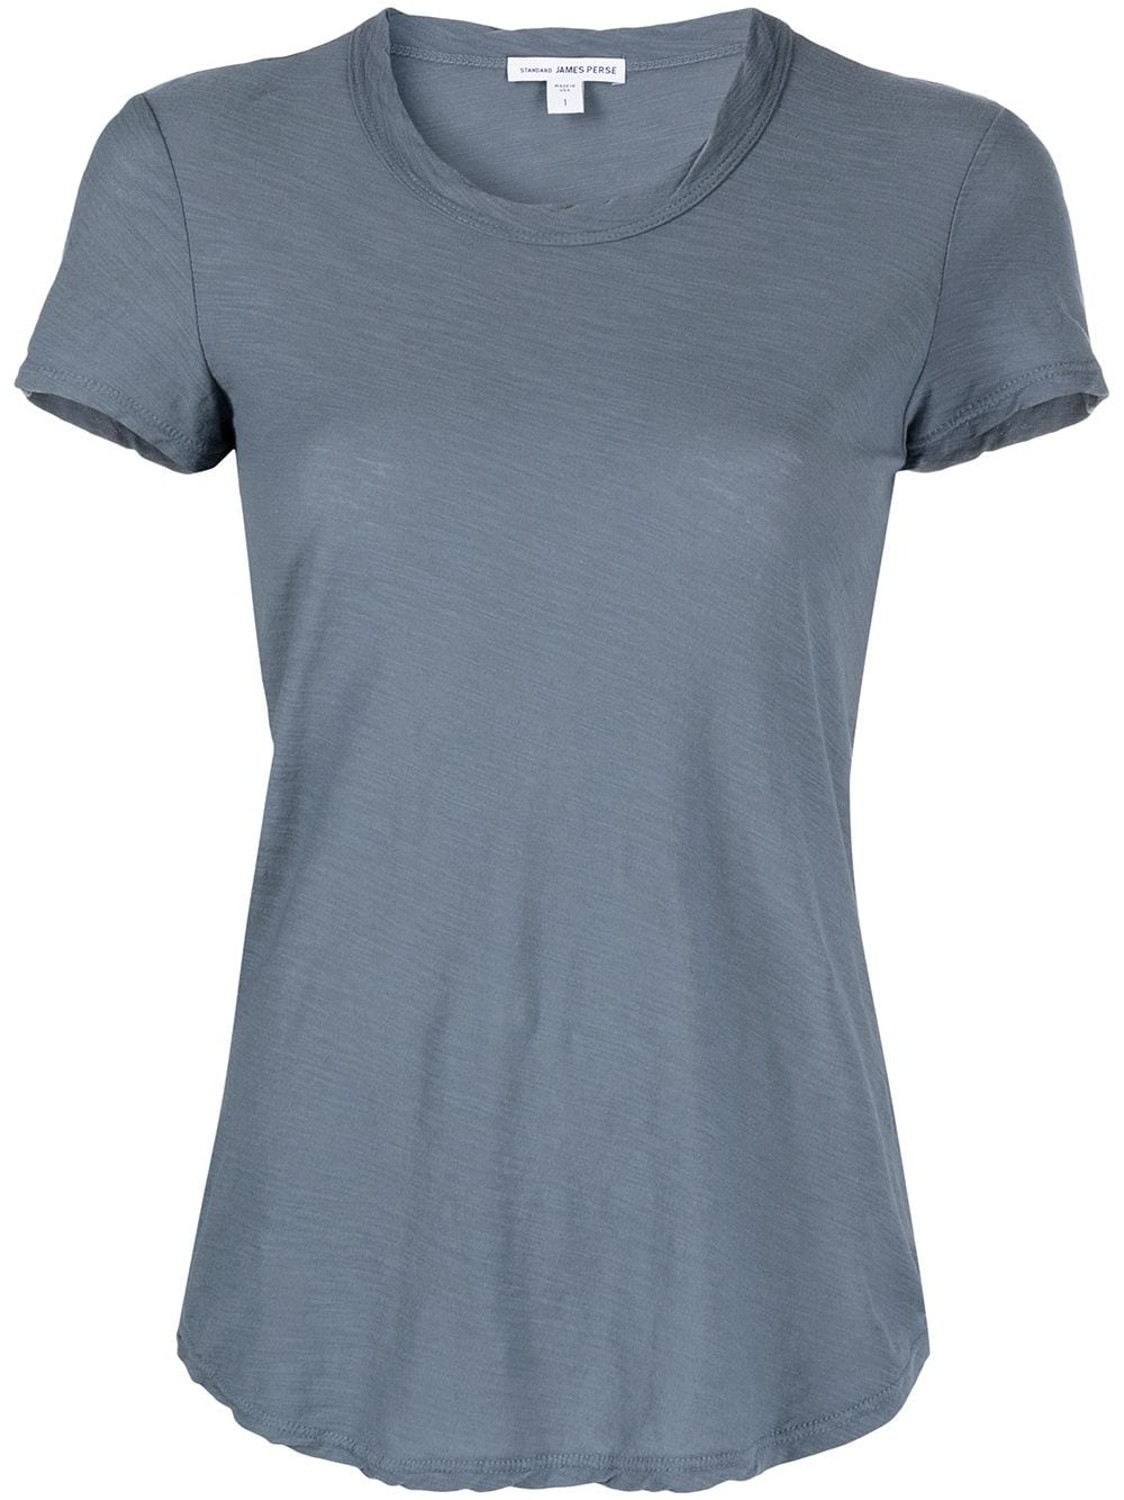 shop James Perse  T-shirts: T-shirts James Perse, girocollo, manica corta, stondata infondo, in cotone fiammato, color denim.

Composizione: 100% cotone. number 2056